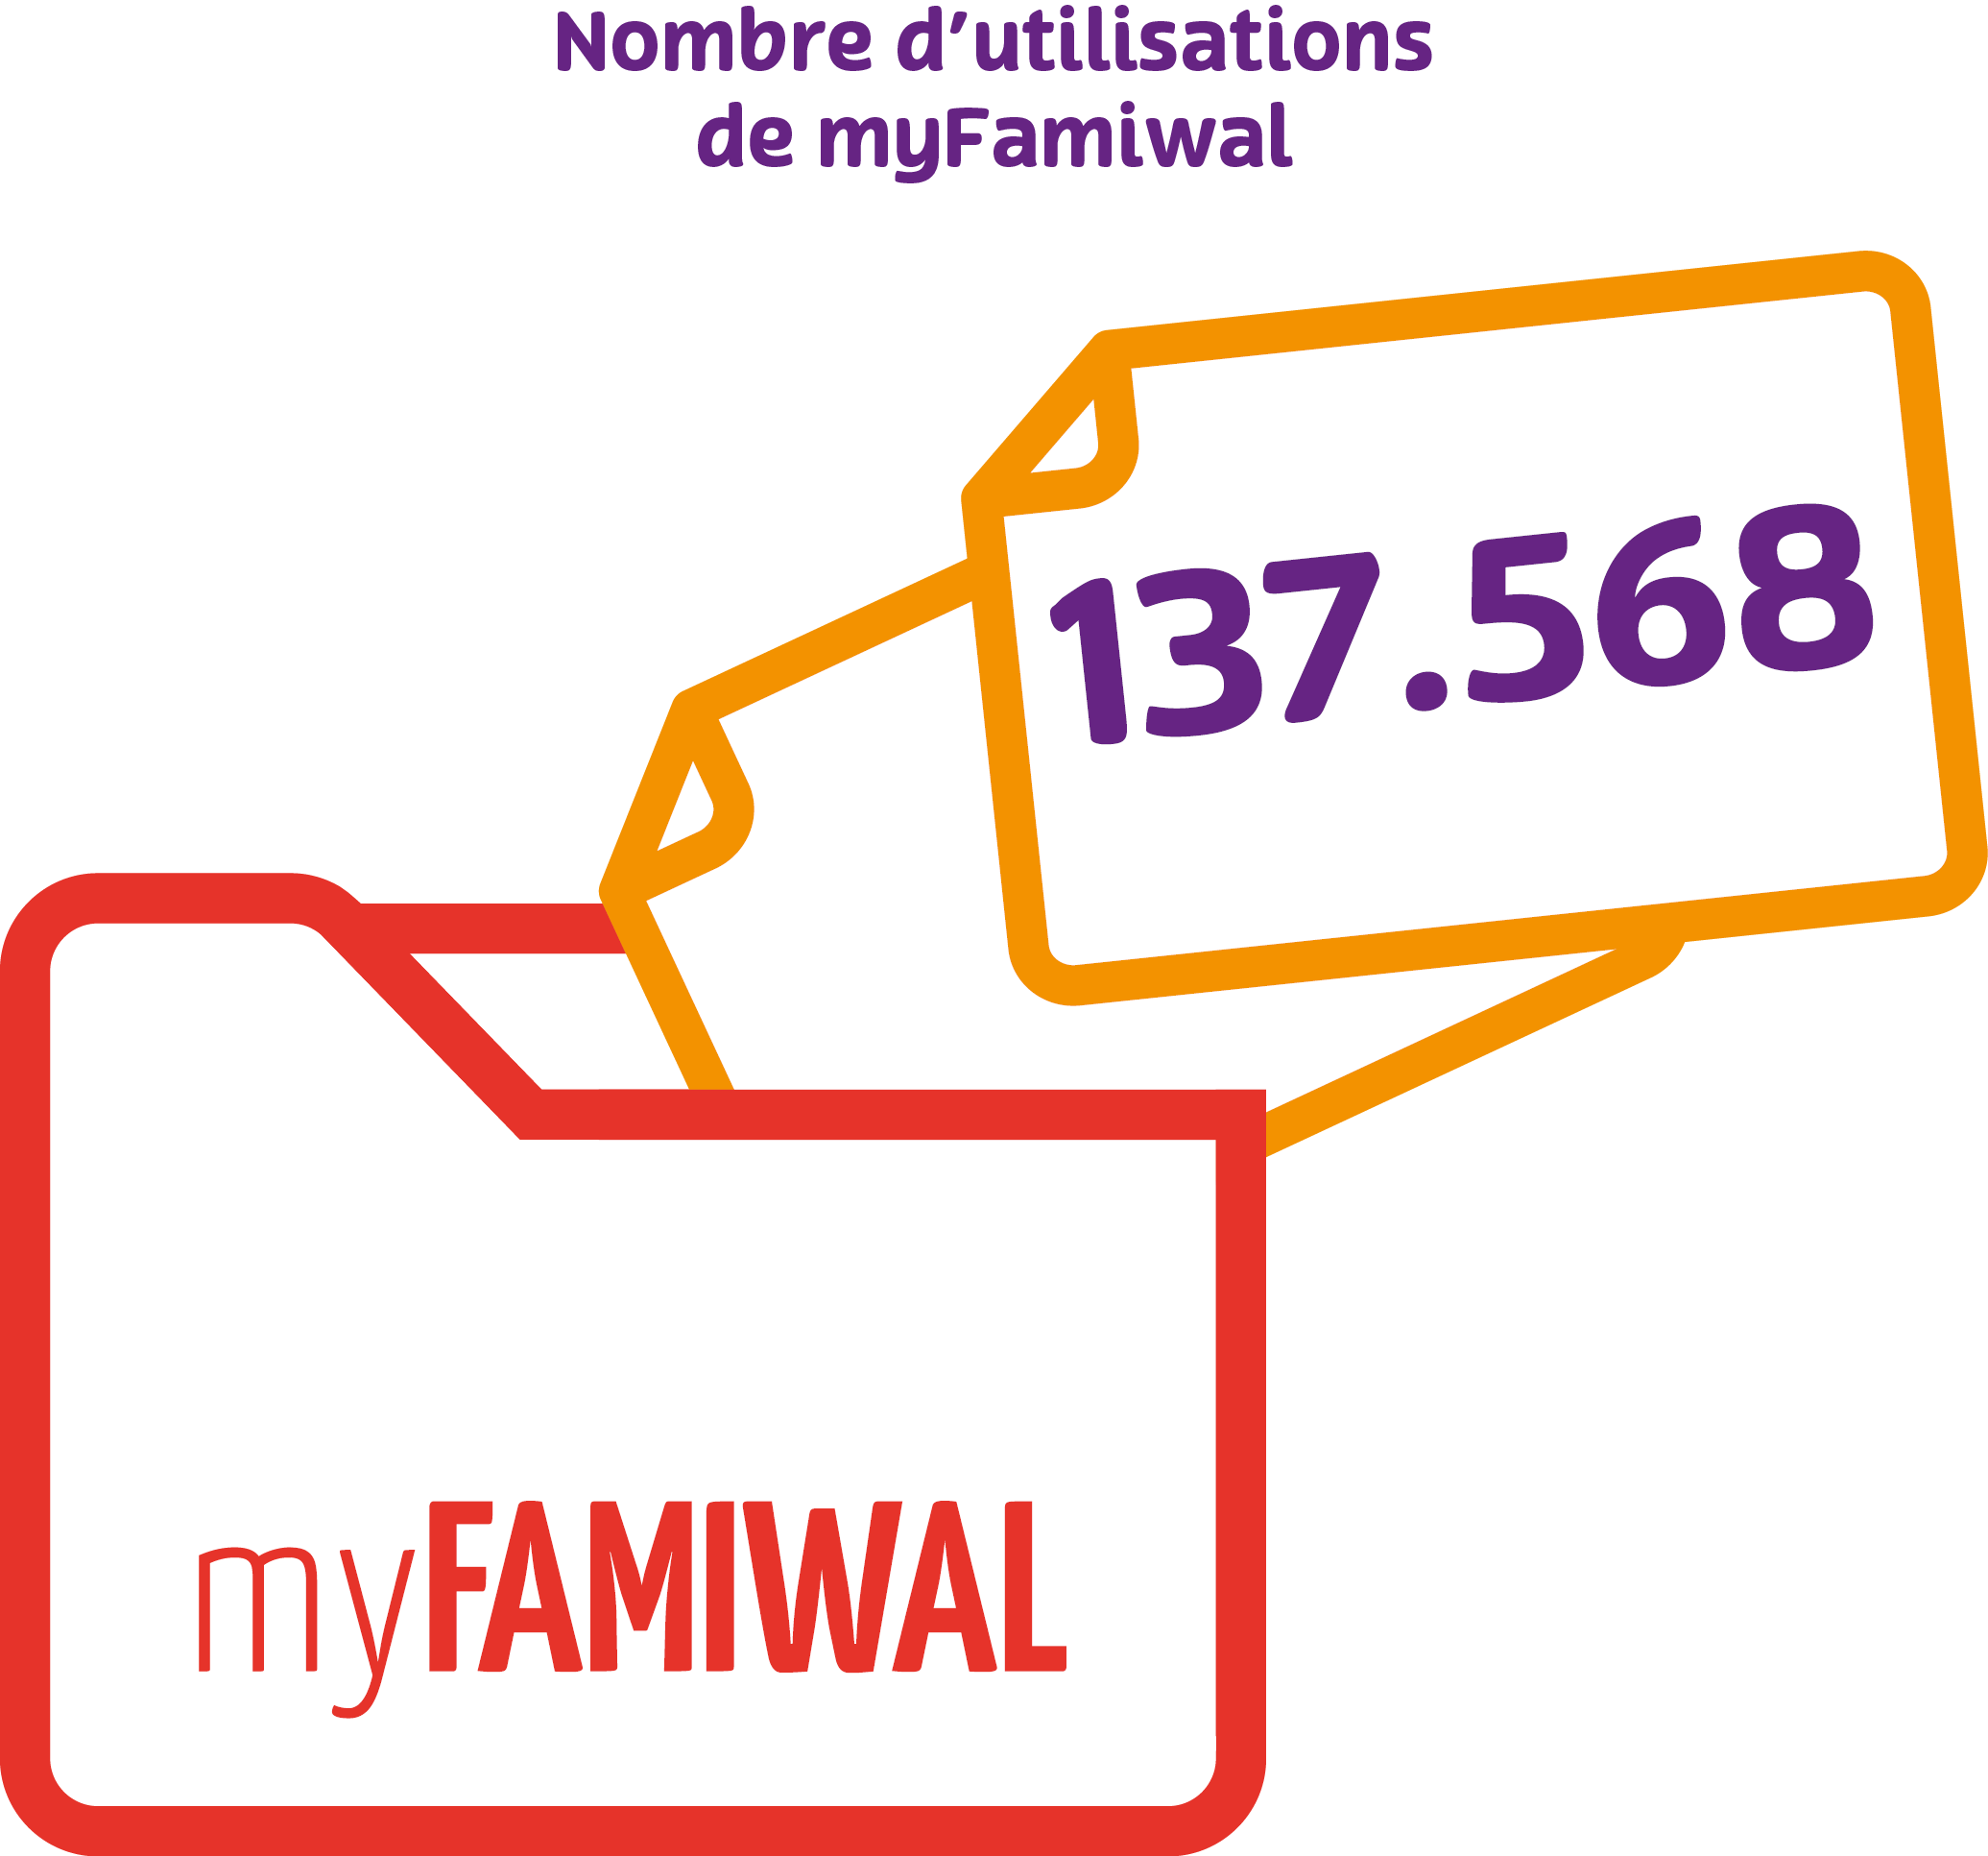 Nombre d'utilisation de myfamiwal 2021